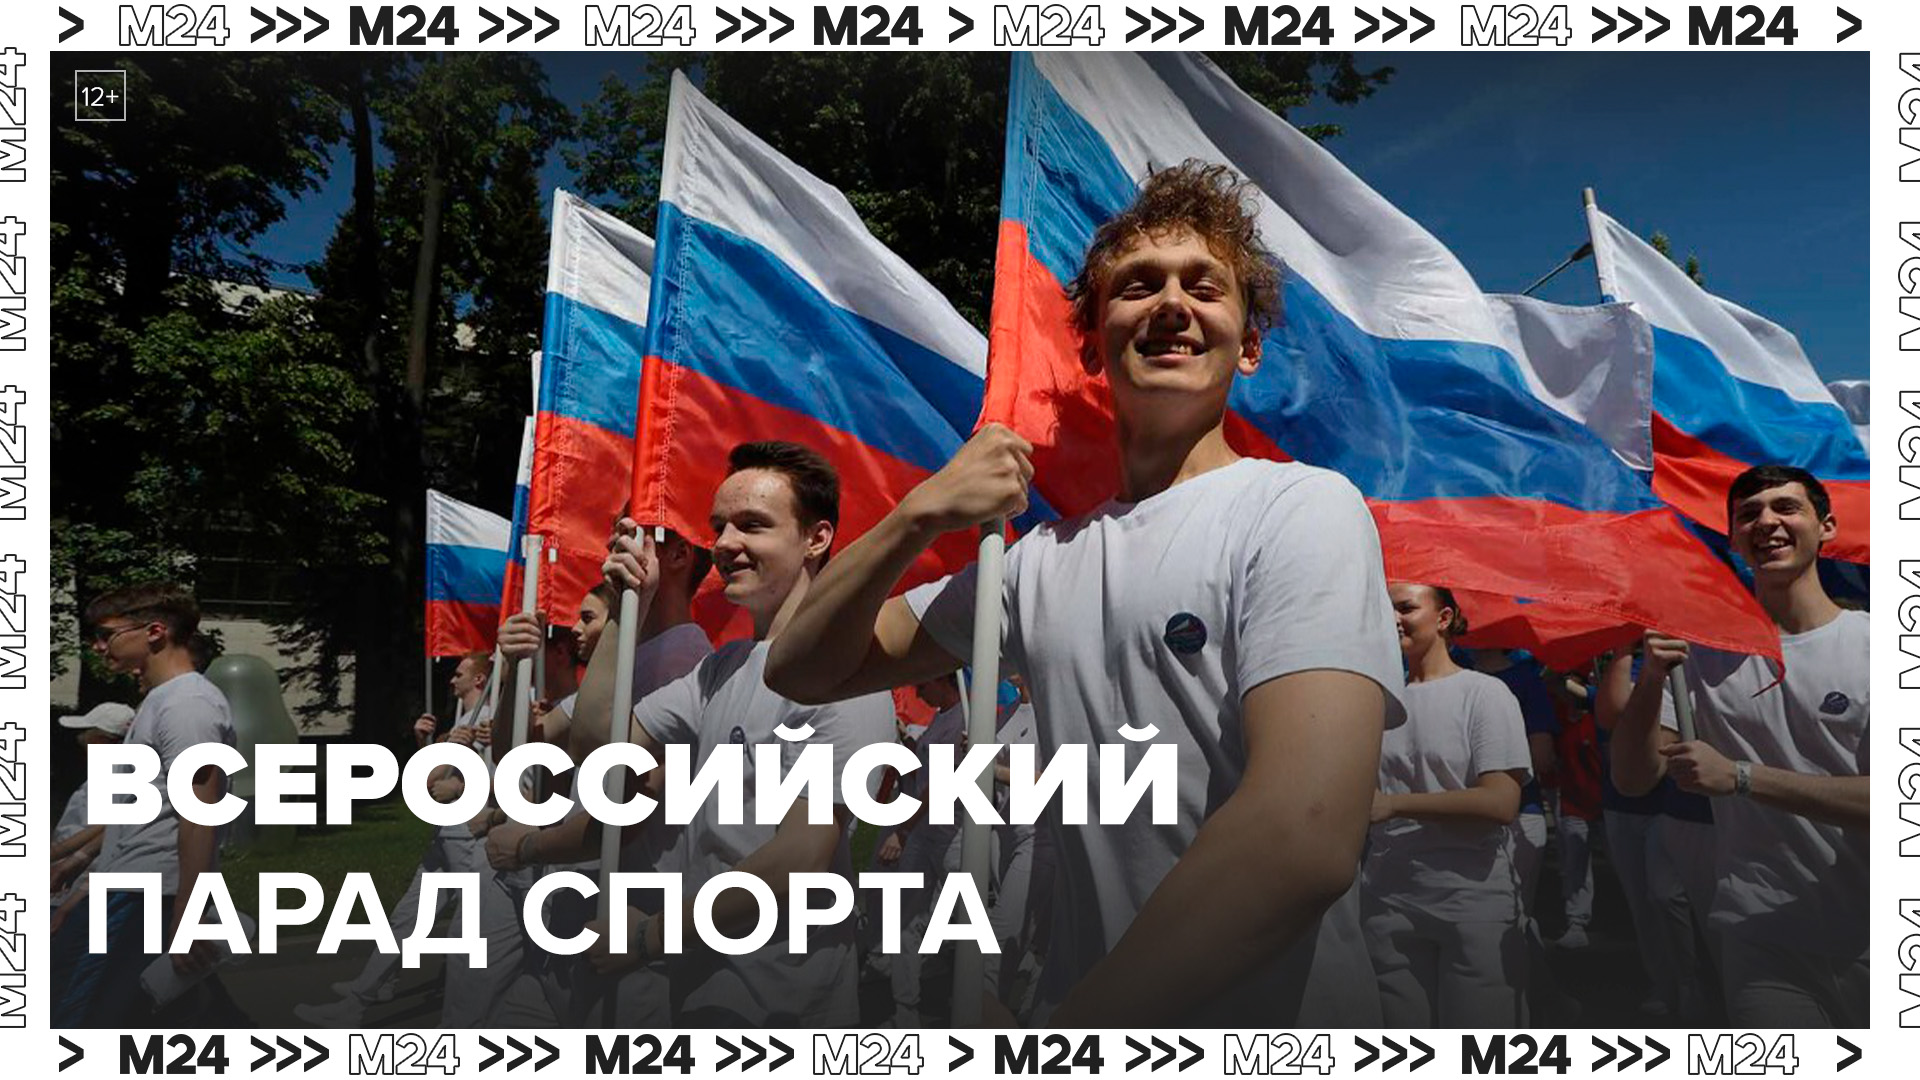 Всероссийский парад спорт состоялся на ВДНХ 25 мая - Москва 24